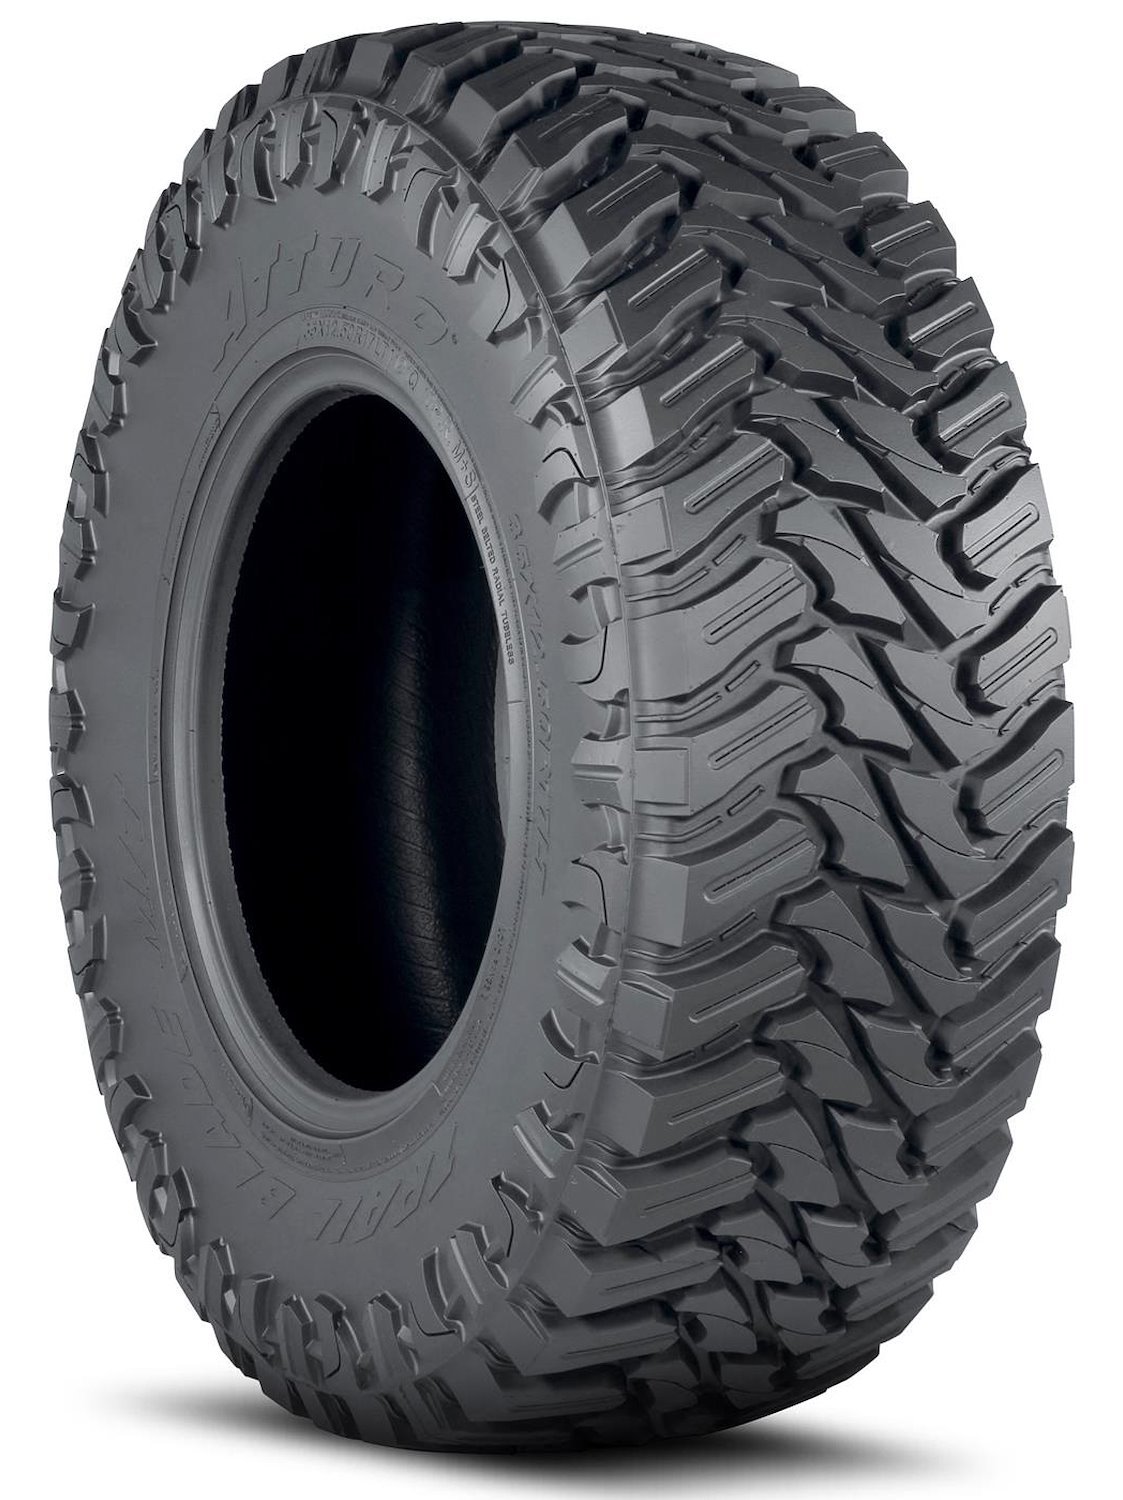 TBMT-LELM2MA Trail Blade M/T Tire, 35x12.50R22LT